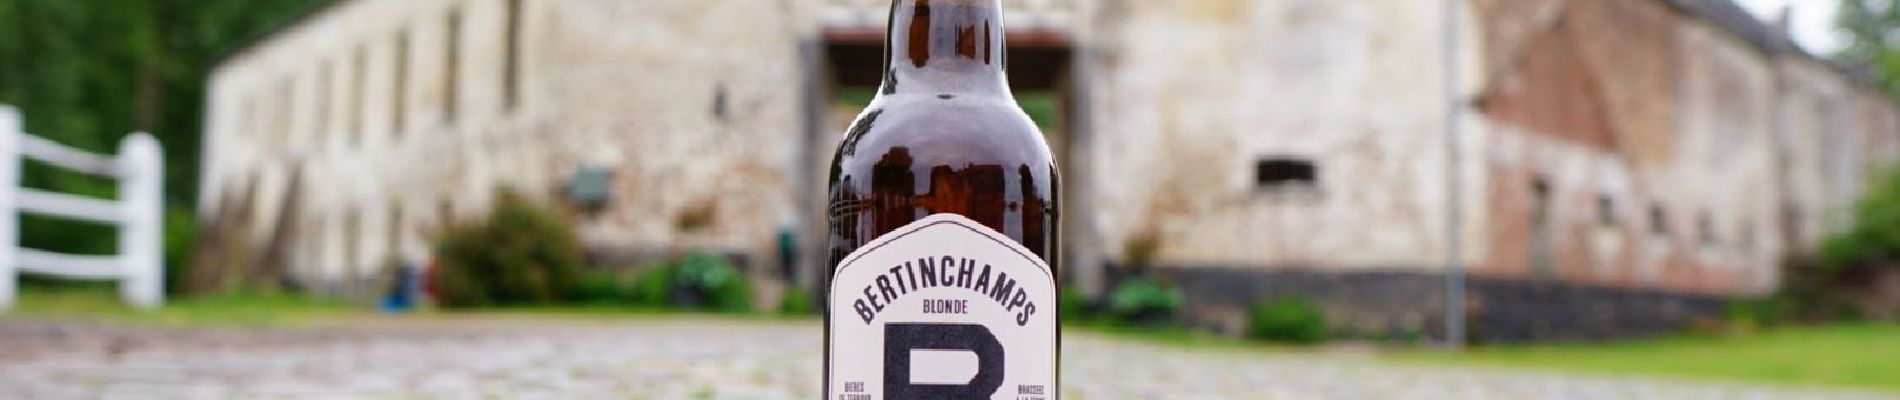 Randonnée A pied Gembloux - Rando bière : Bertinchamps - 5KM (GPX Madame Bougeotte) - Photo